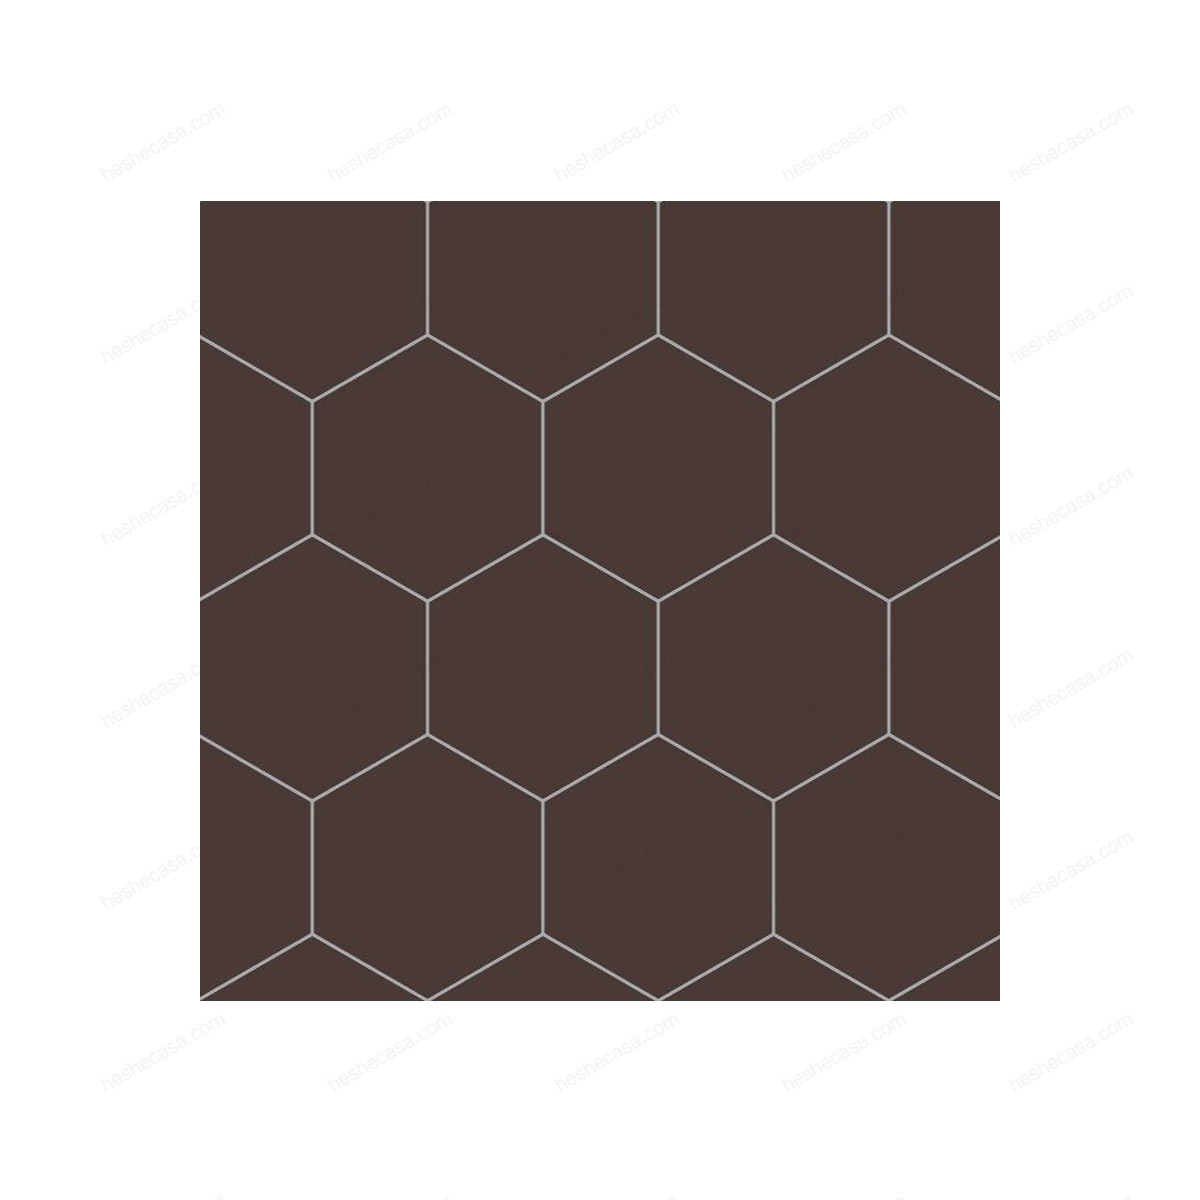 Cioccolato (E)瓷砖